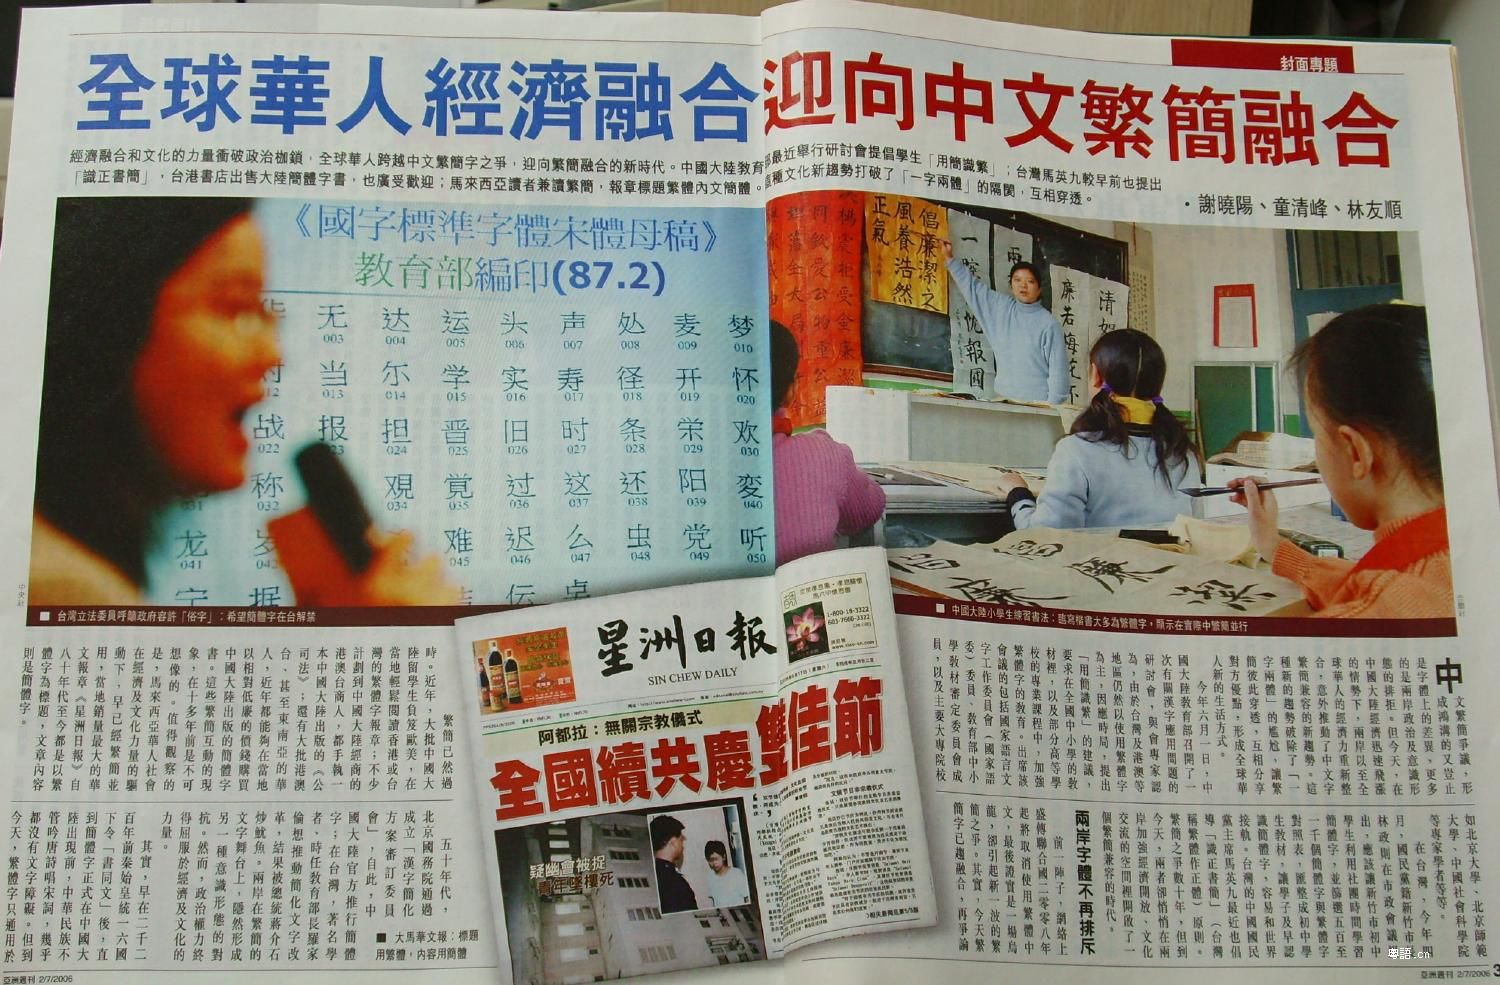 [轉貼] 亞洲週刊 7 月 報導 繁體字在中國、簡體在台灣、及繁簡在大馬互用的情況